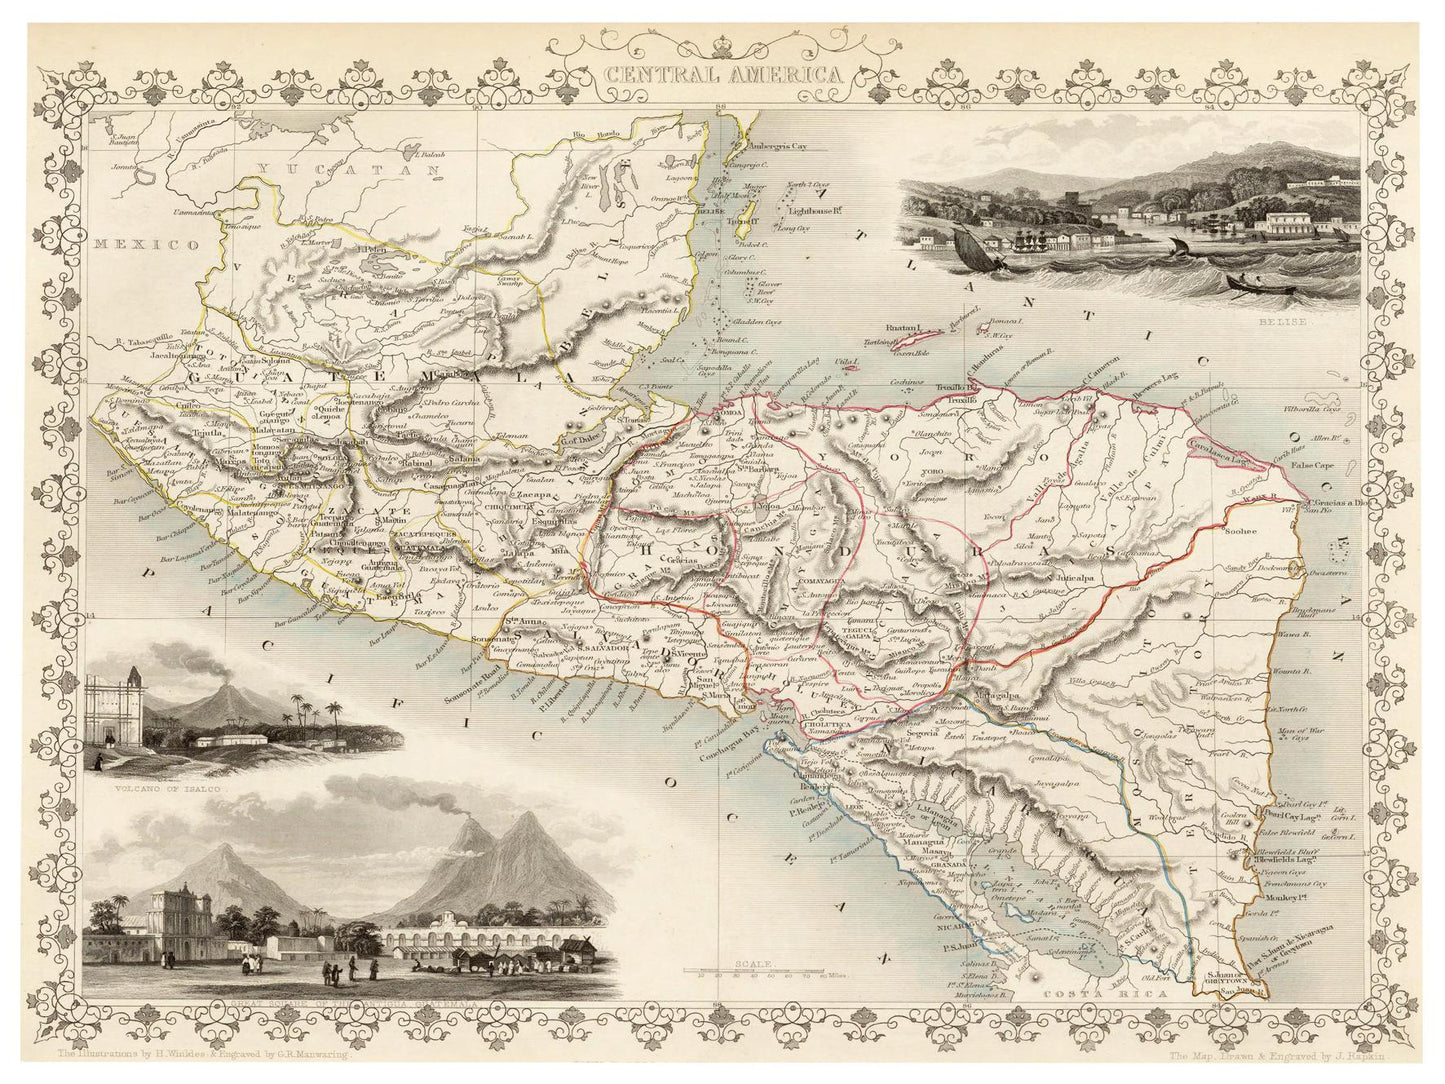 Historische Landkarte Mittelamerika um 1850